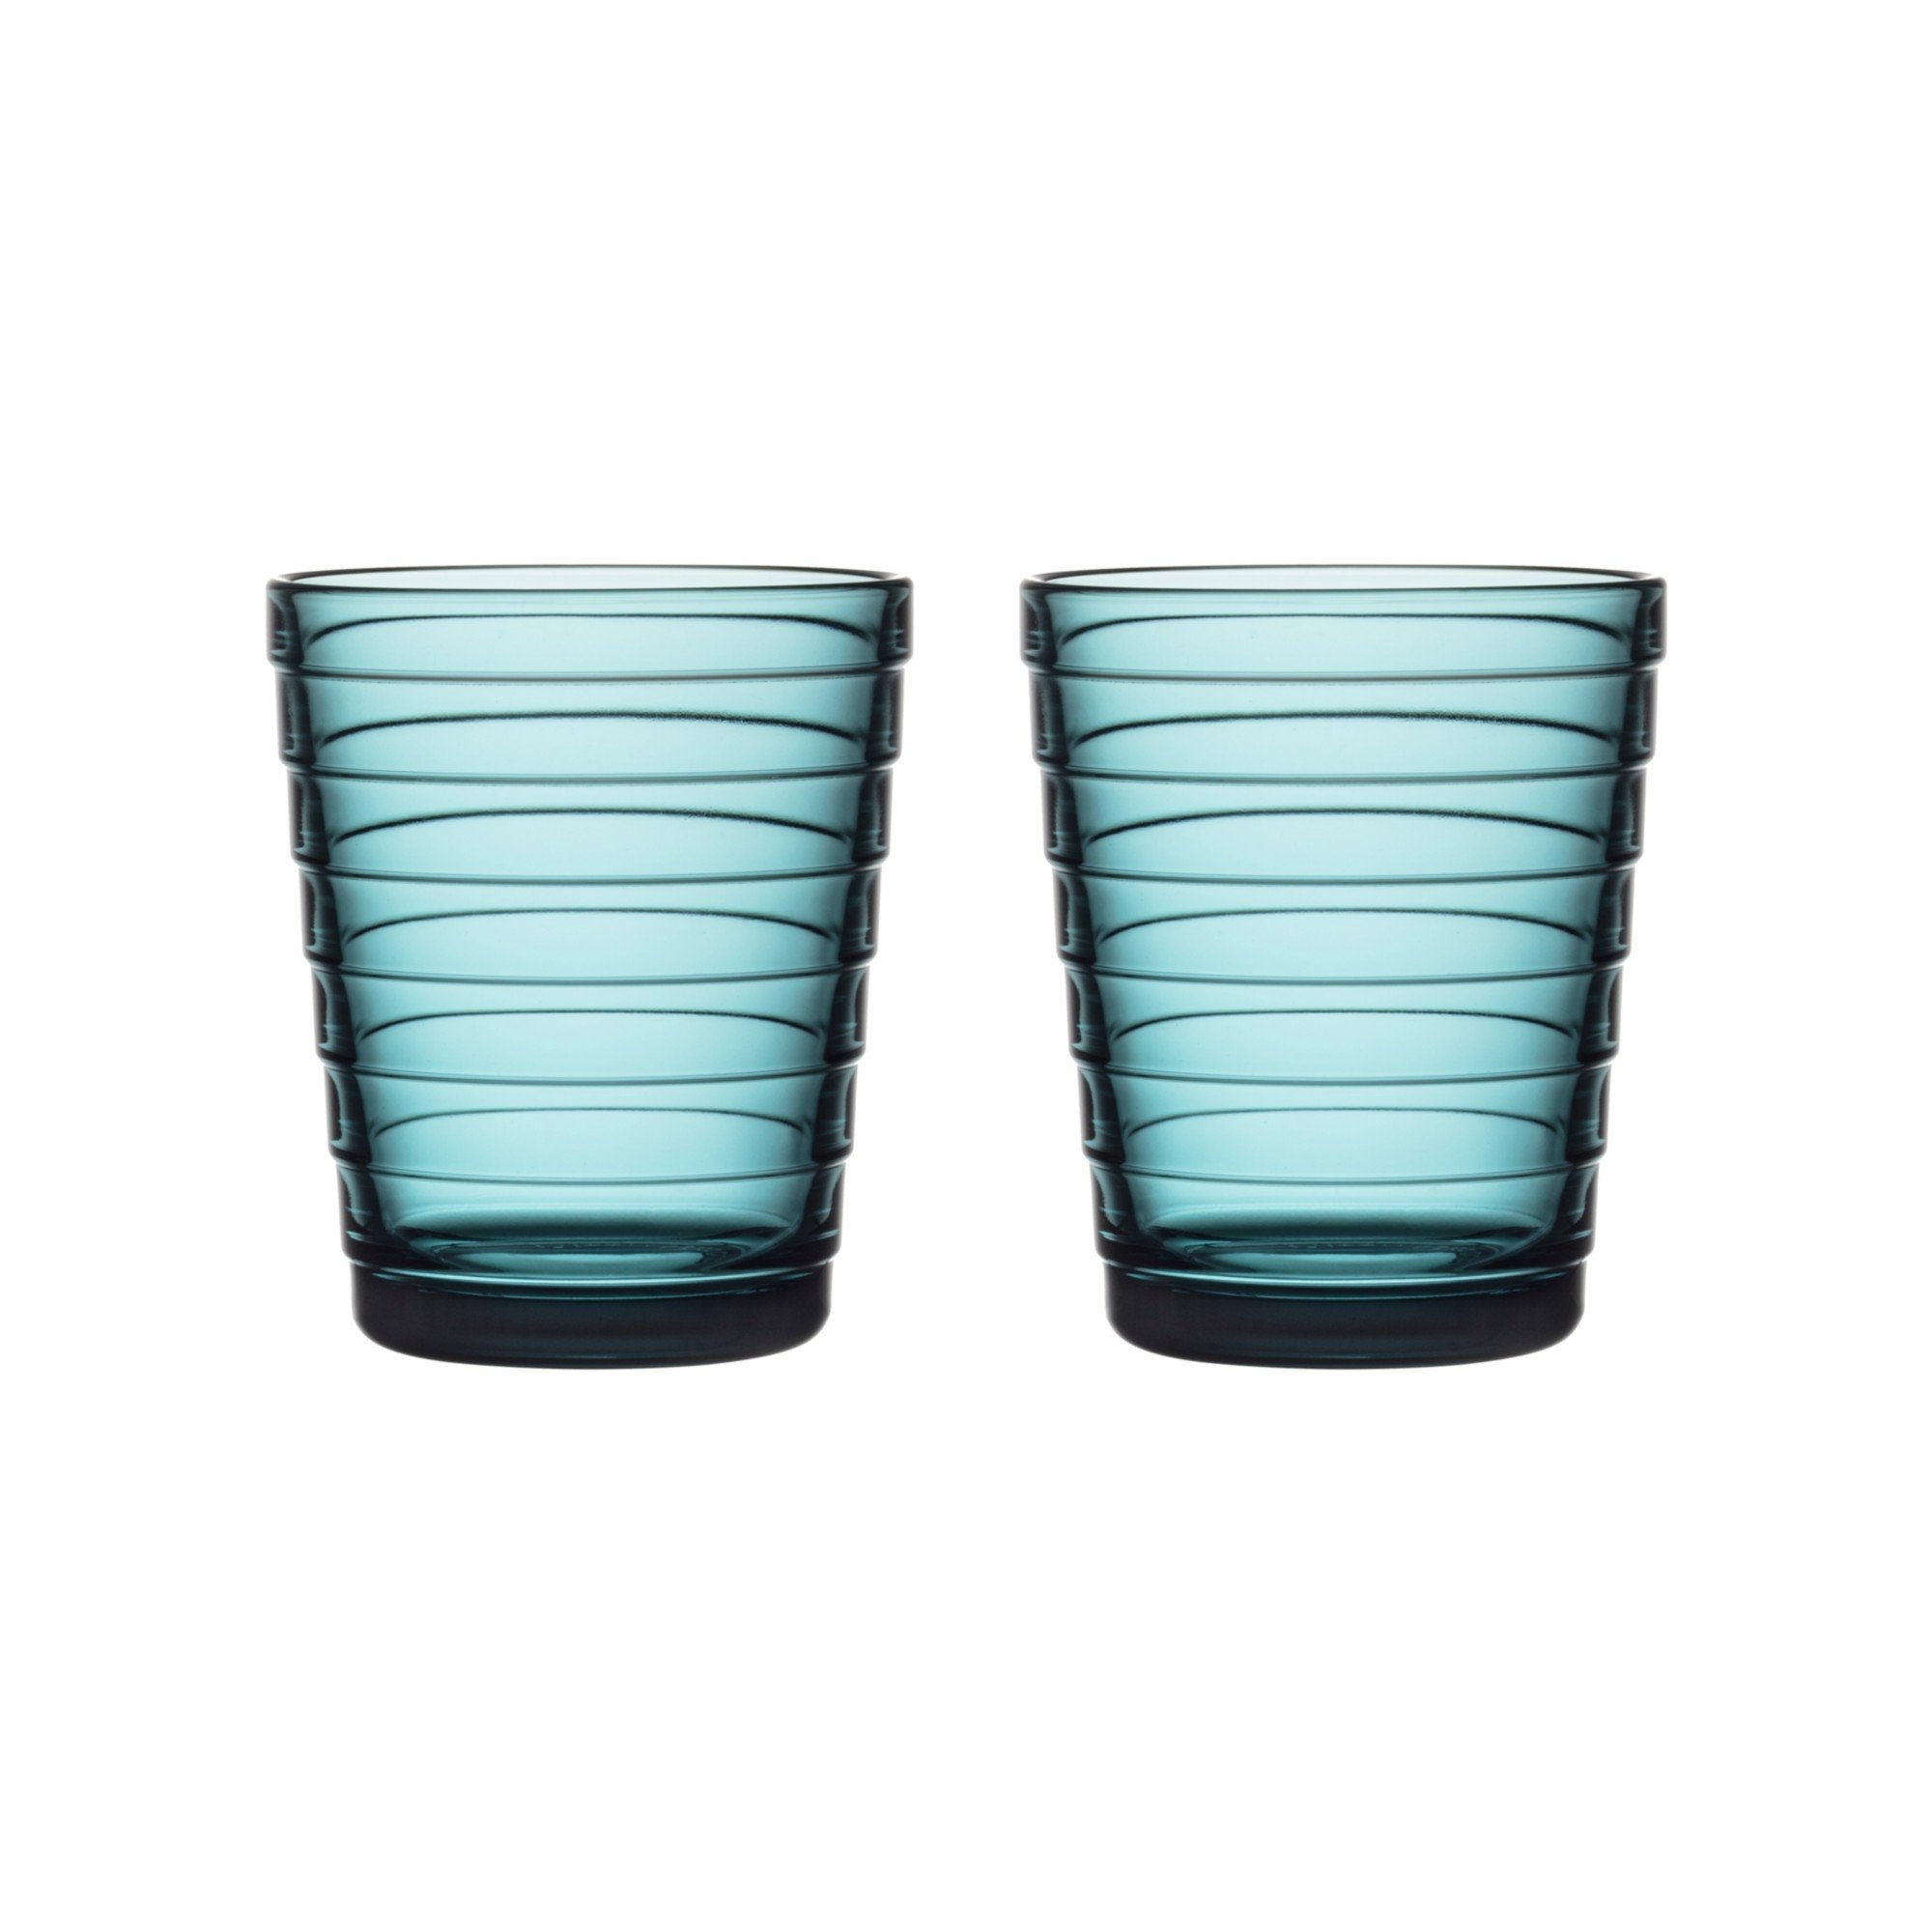 Iittala Aino aalto glas søbel 2 st, 22cl